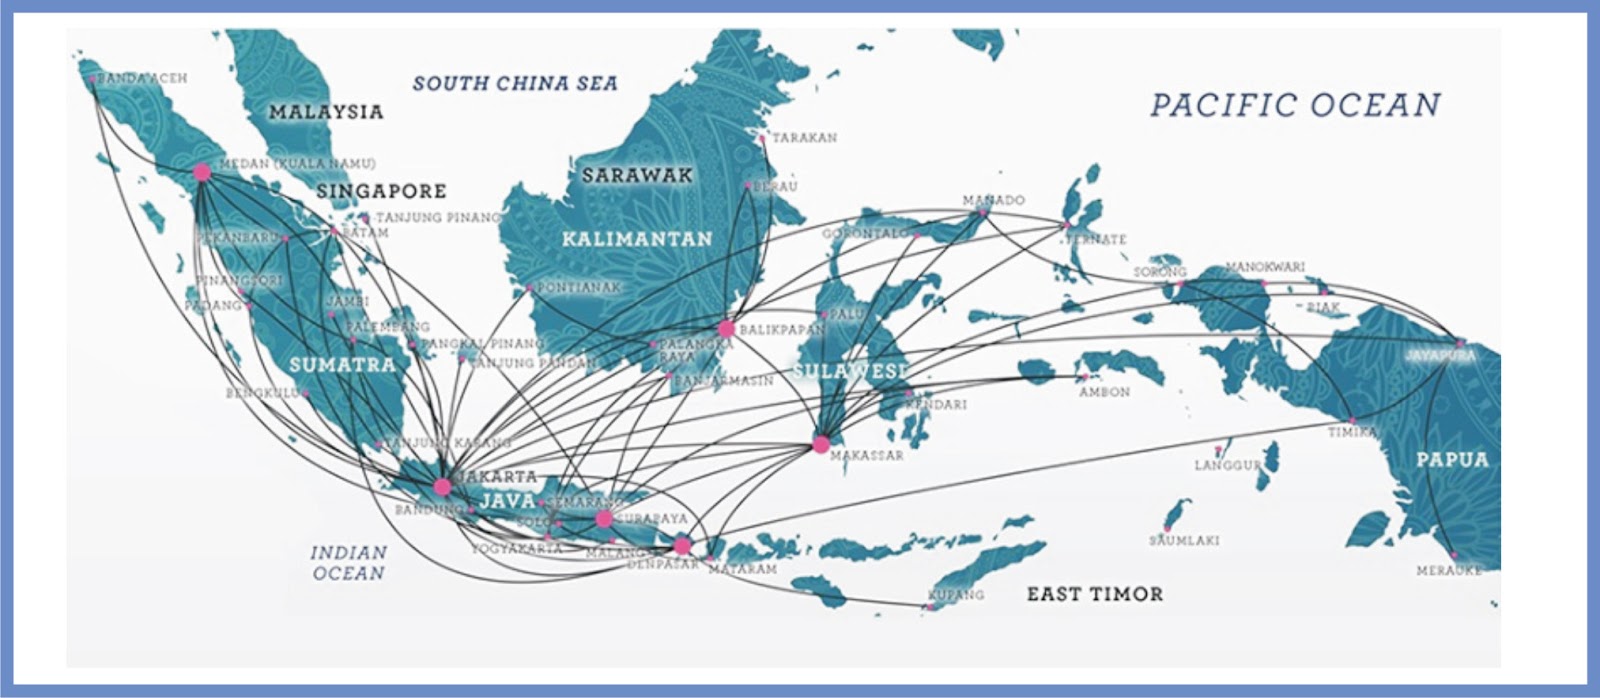 bandara-bandara dan lapangan udara di tiap-tiap provinsi di Indonesia